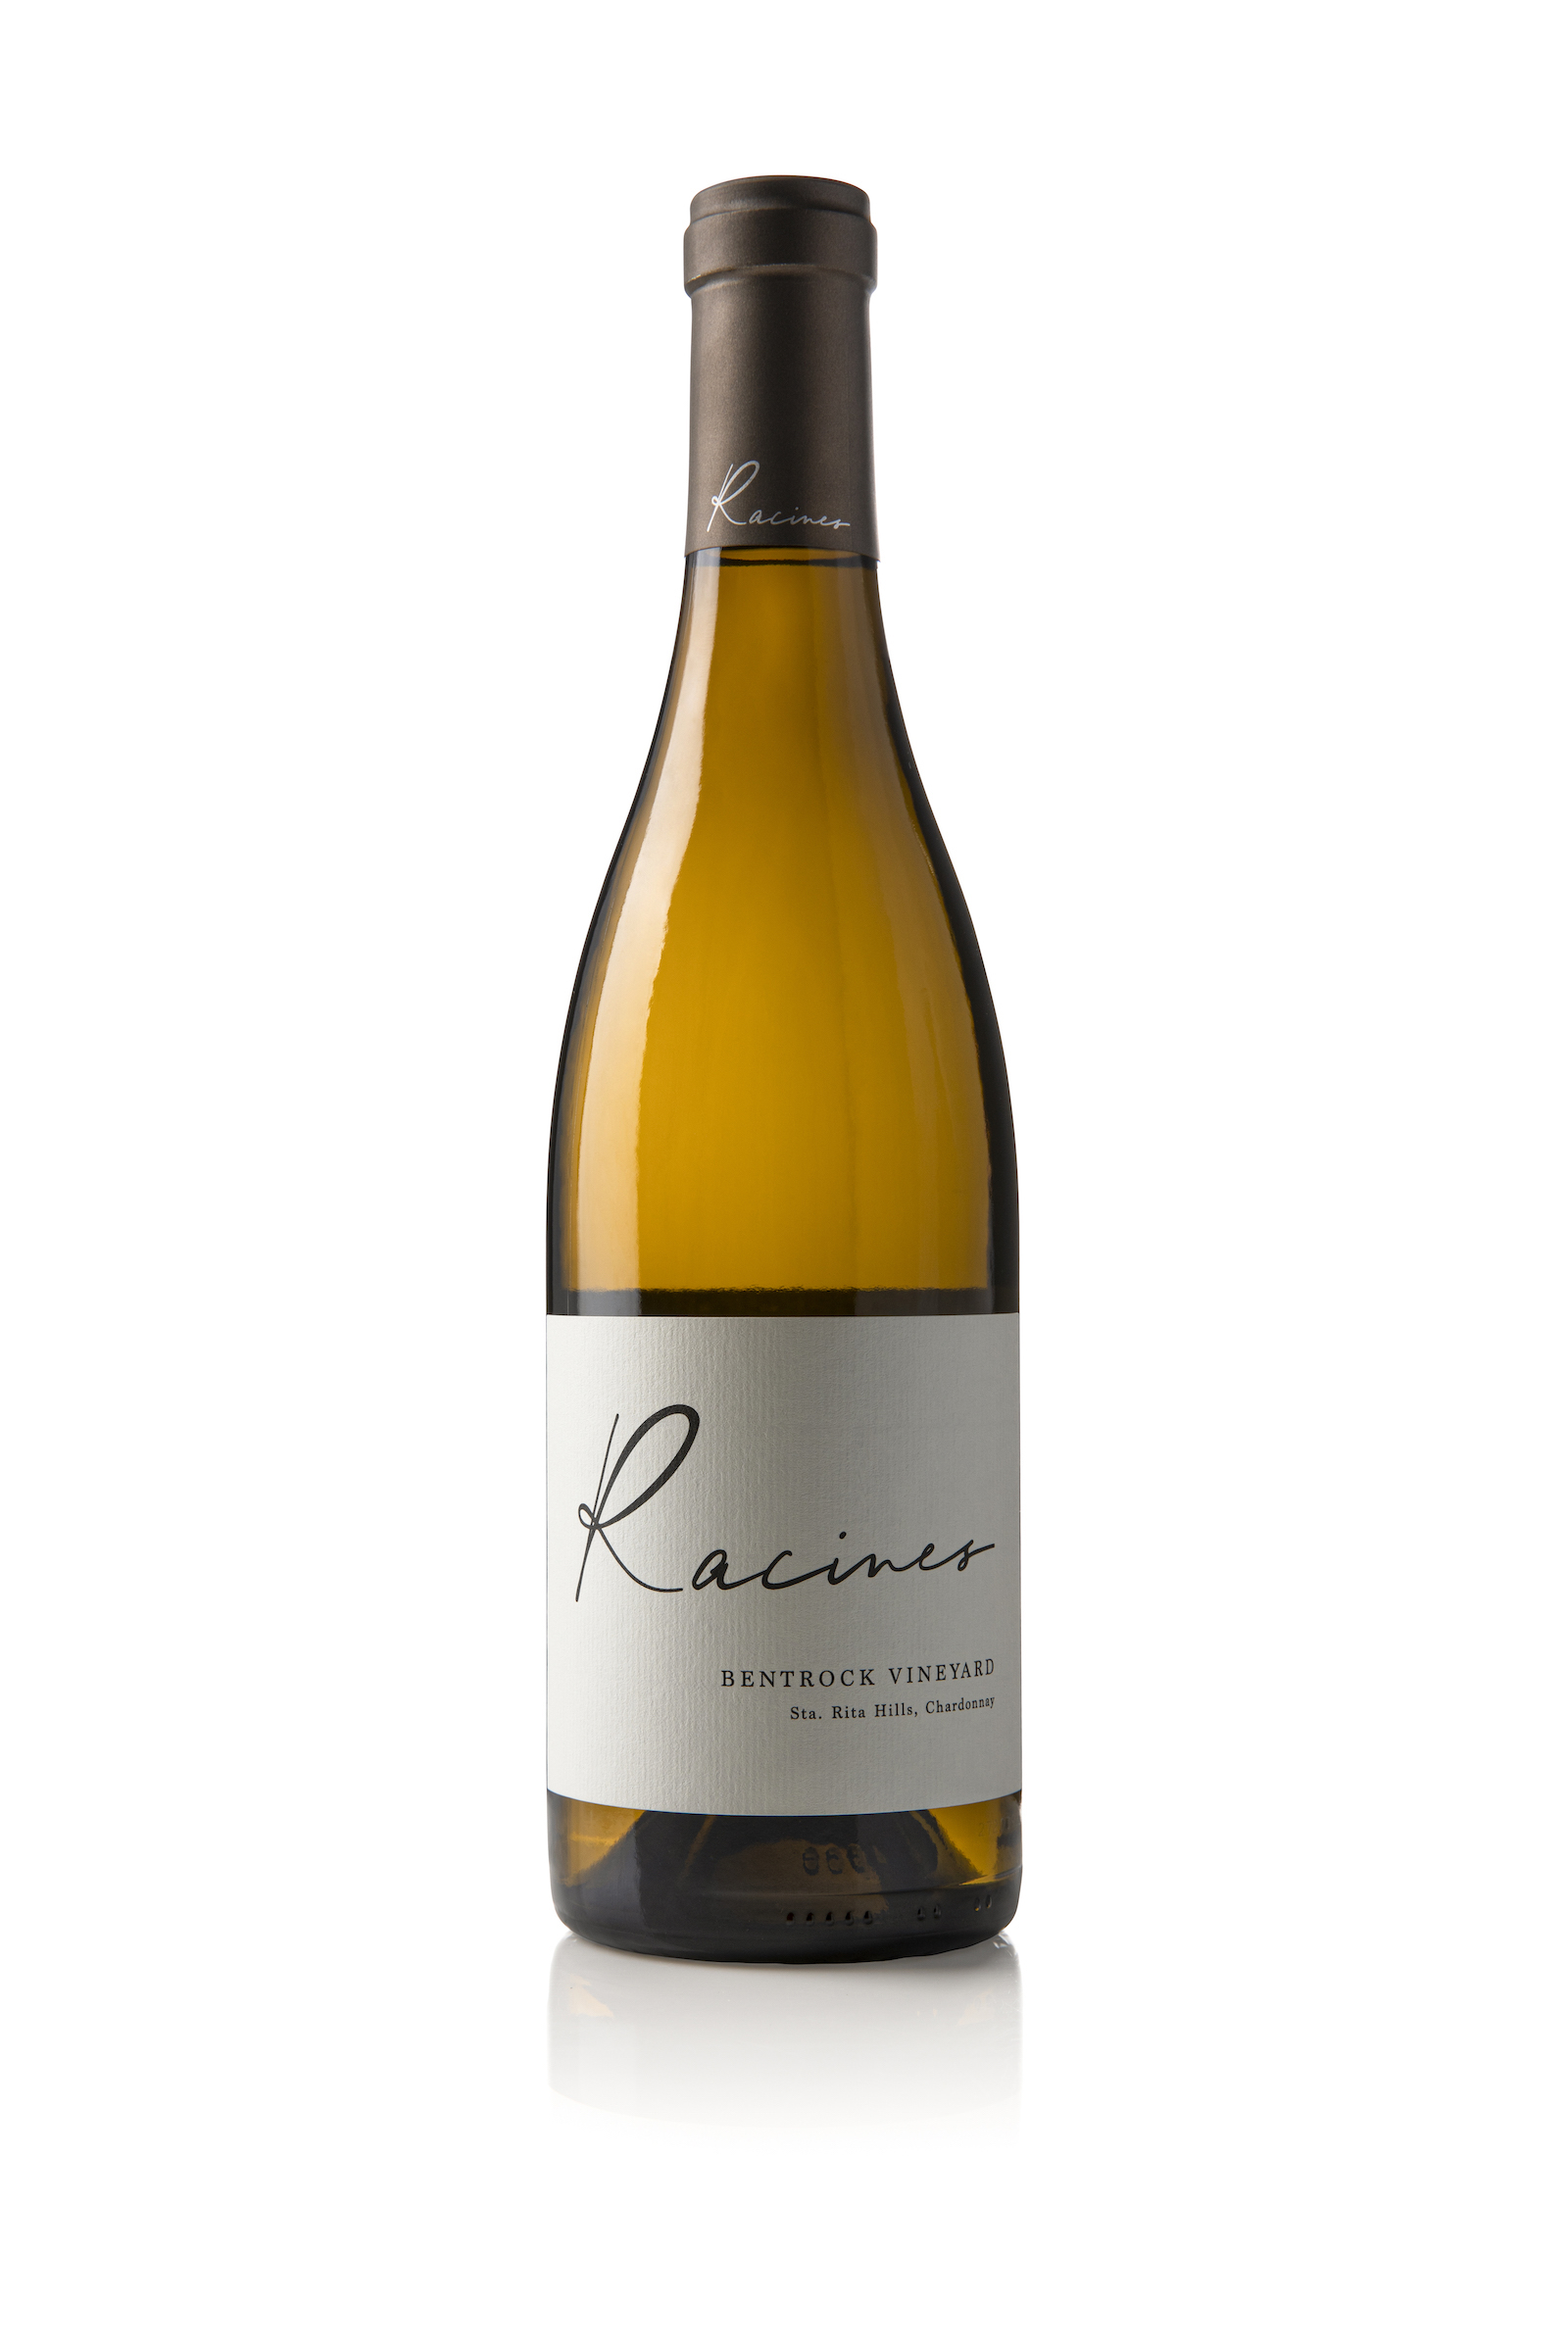 Bottle of Racines Bentrock Vineyard Sta. Rita Hills Chardonnay